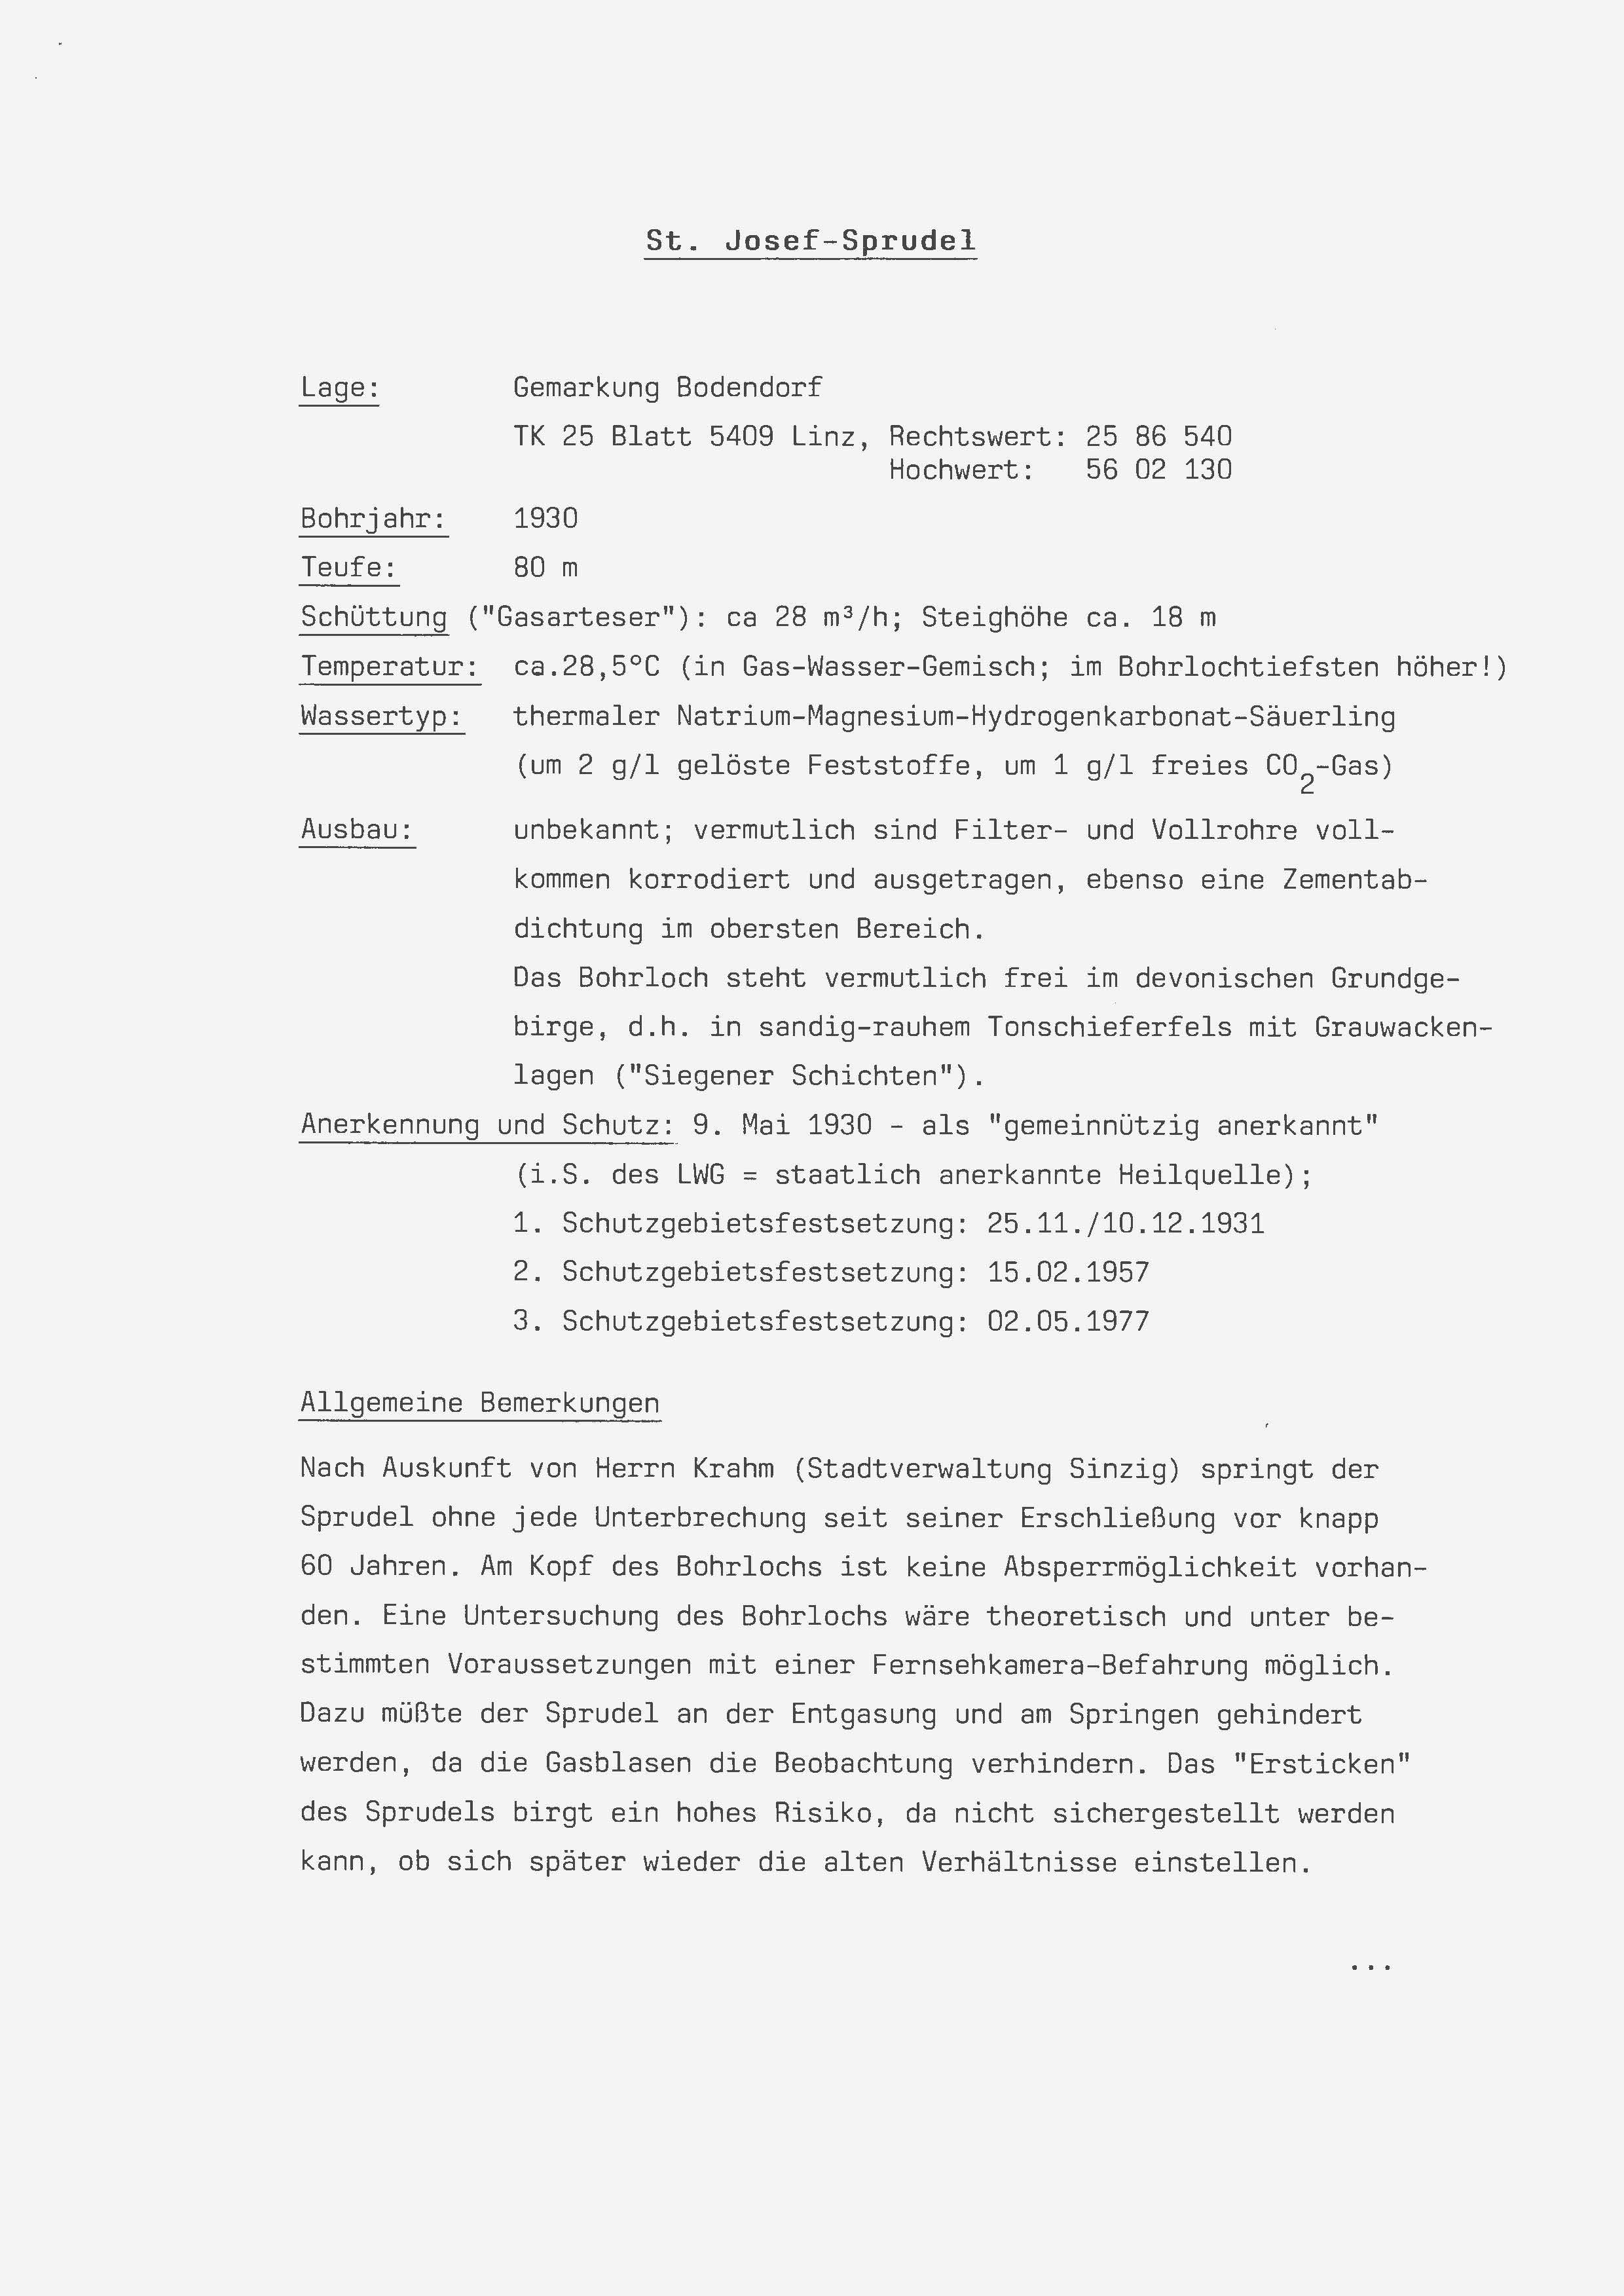 Untersuchungsergebnis des St. Josef-Sprudel , Bohrung von 1930, aus Leisungsfähigkeit im Jahr 1989 (Heimatarchiv Bad Bodendorf CC BY-NC-SA)